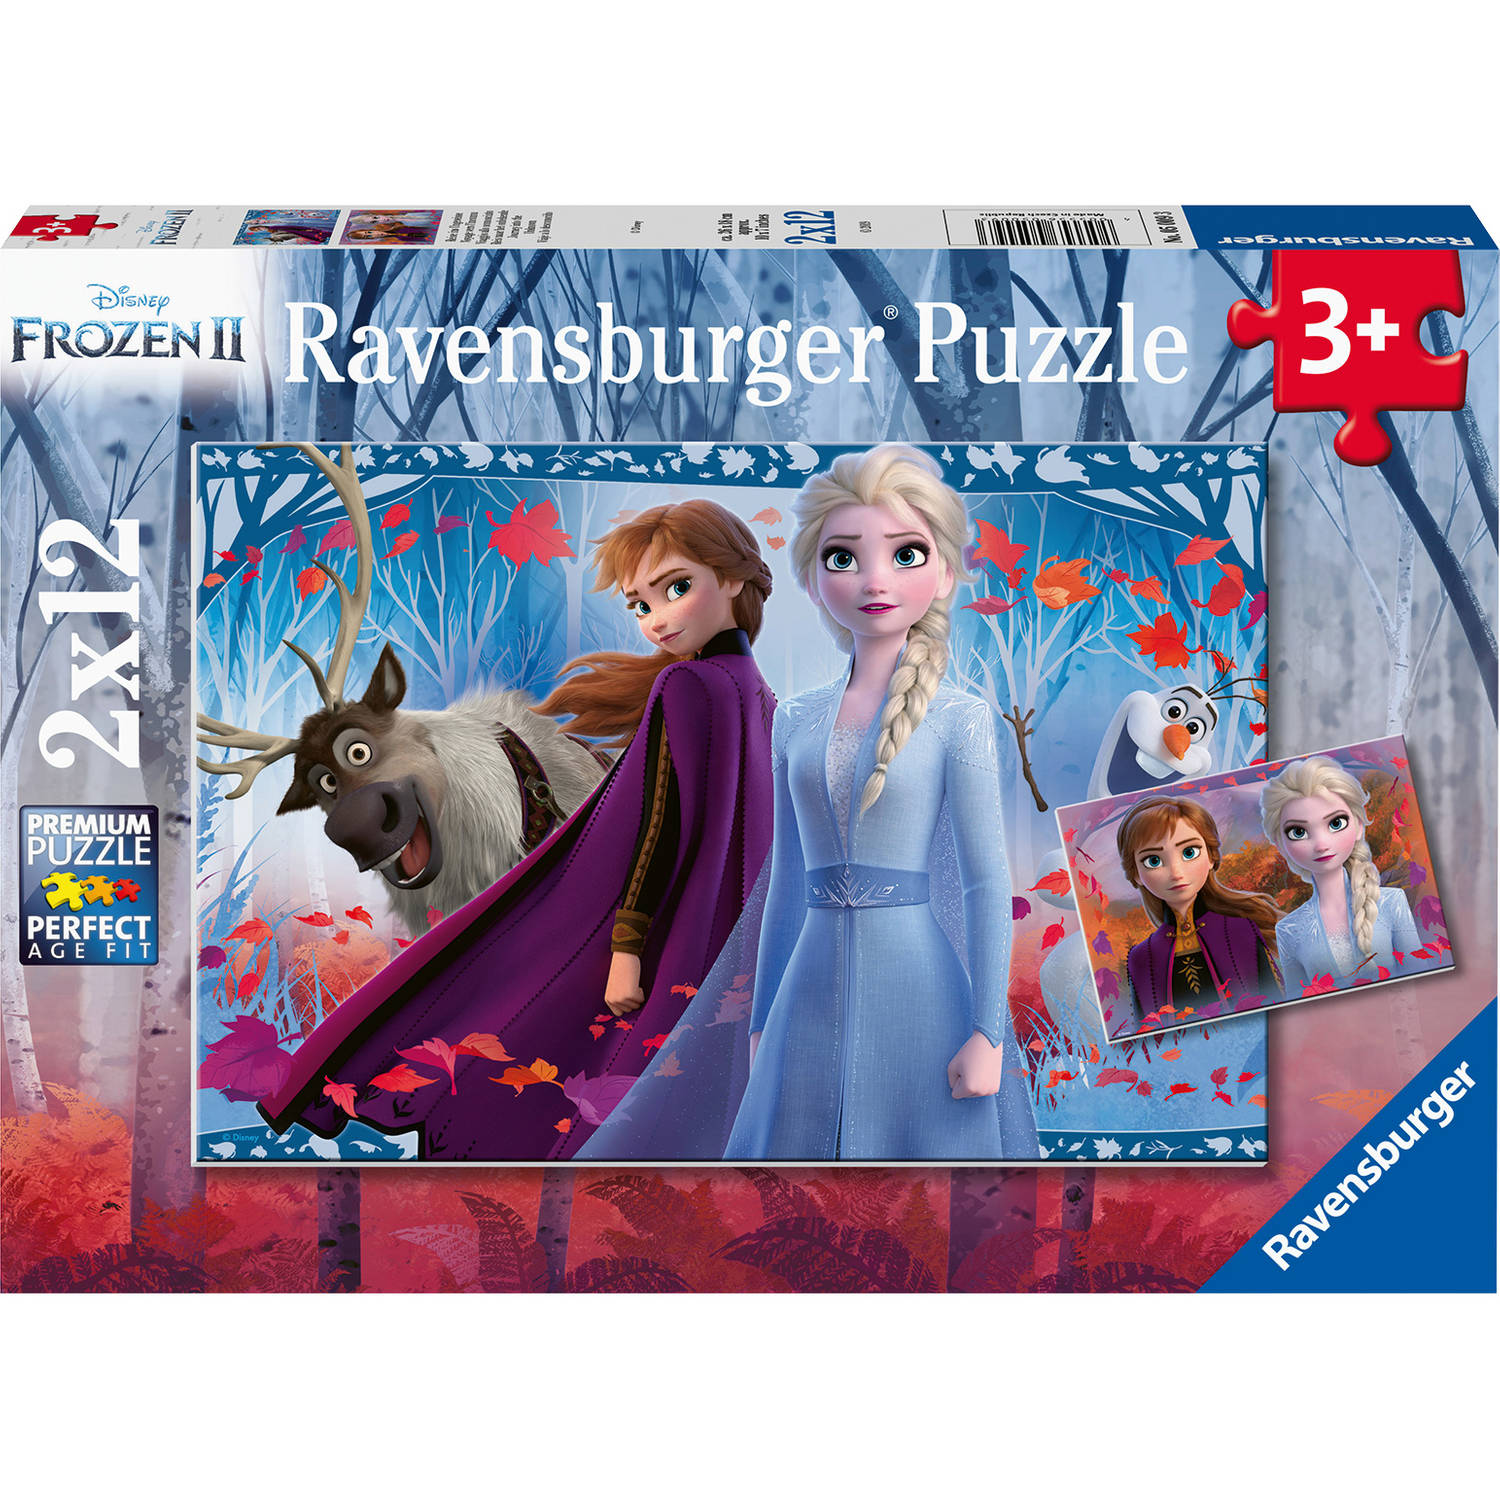 Ravensburger puzzel Frozen ll 2x12pcs